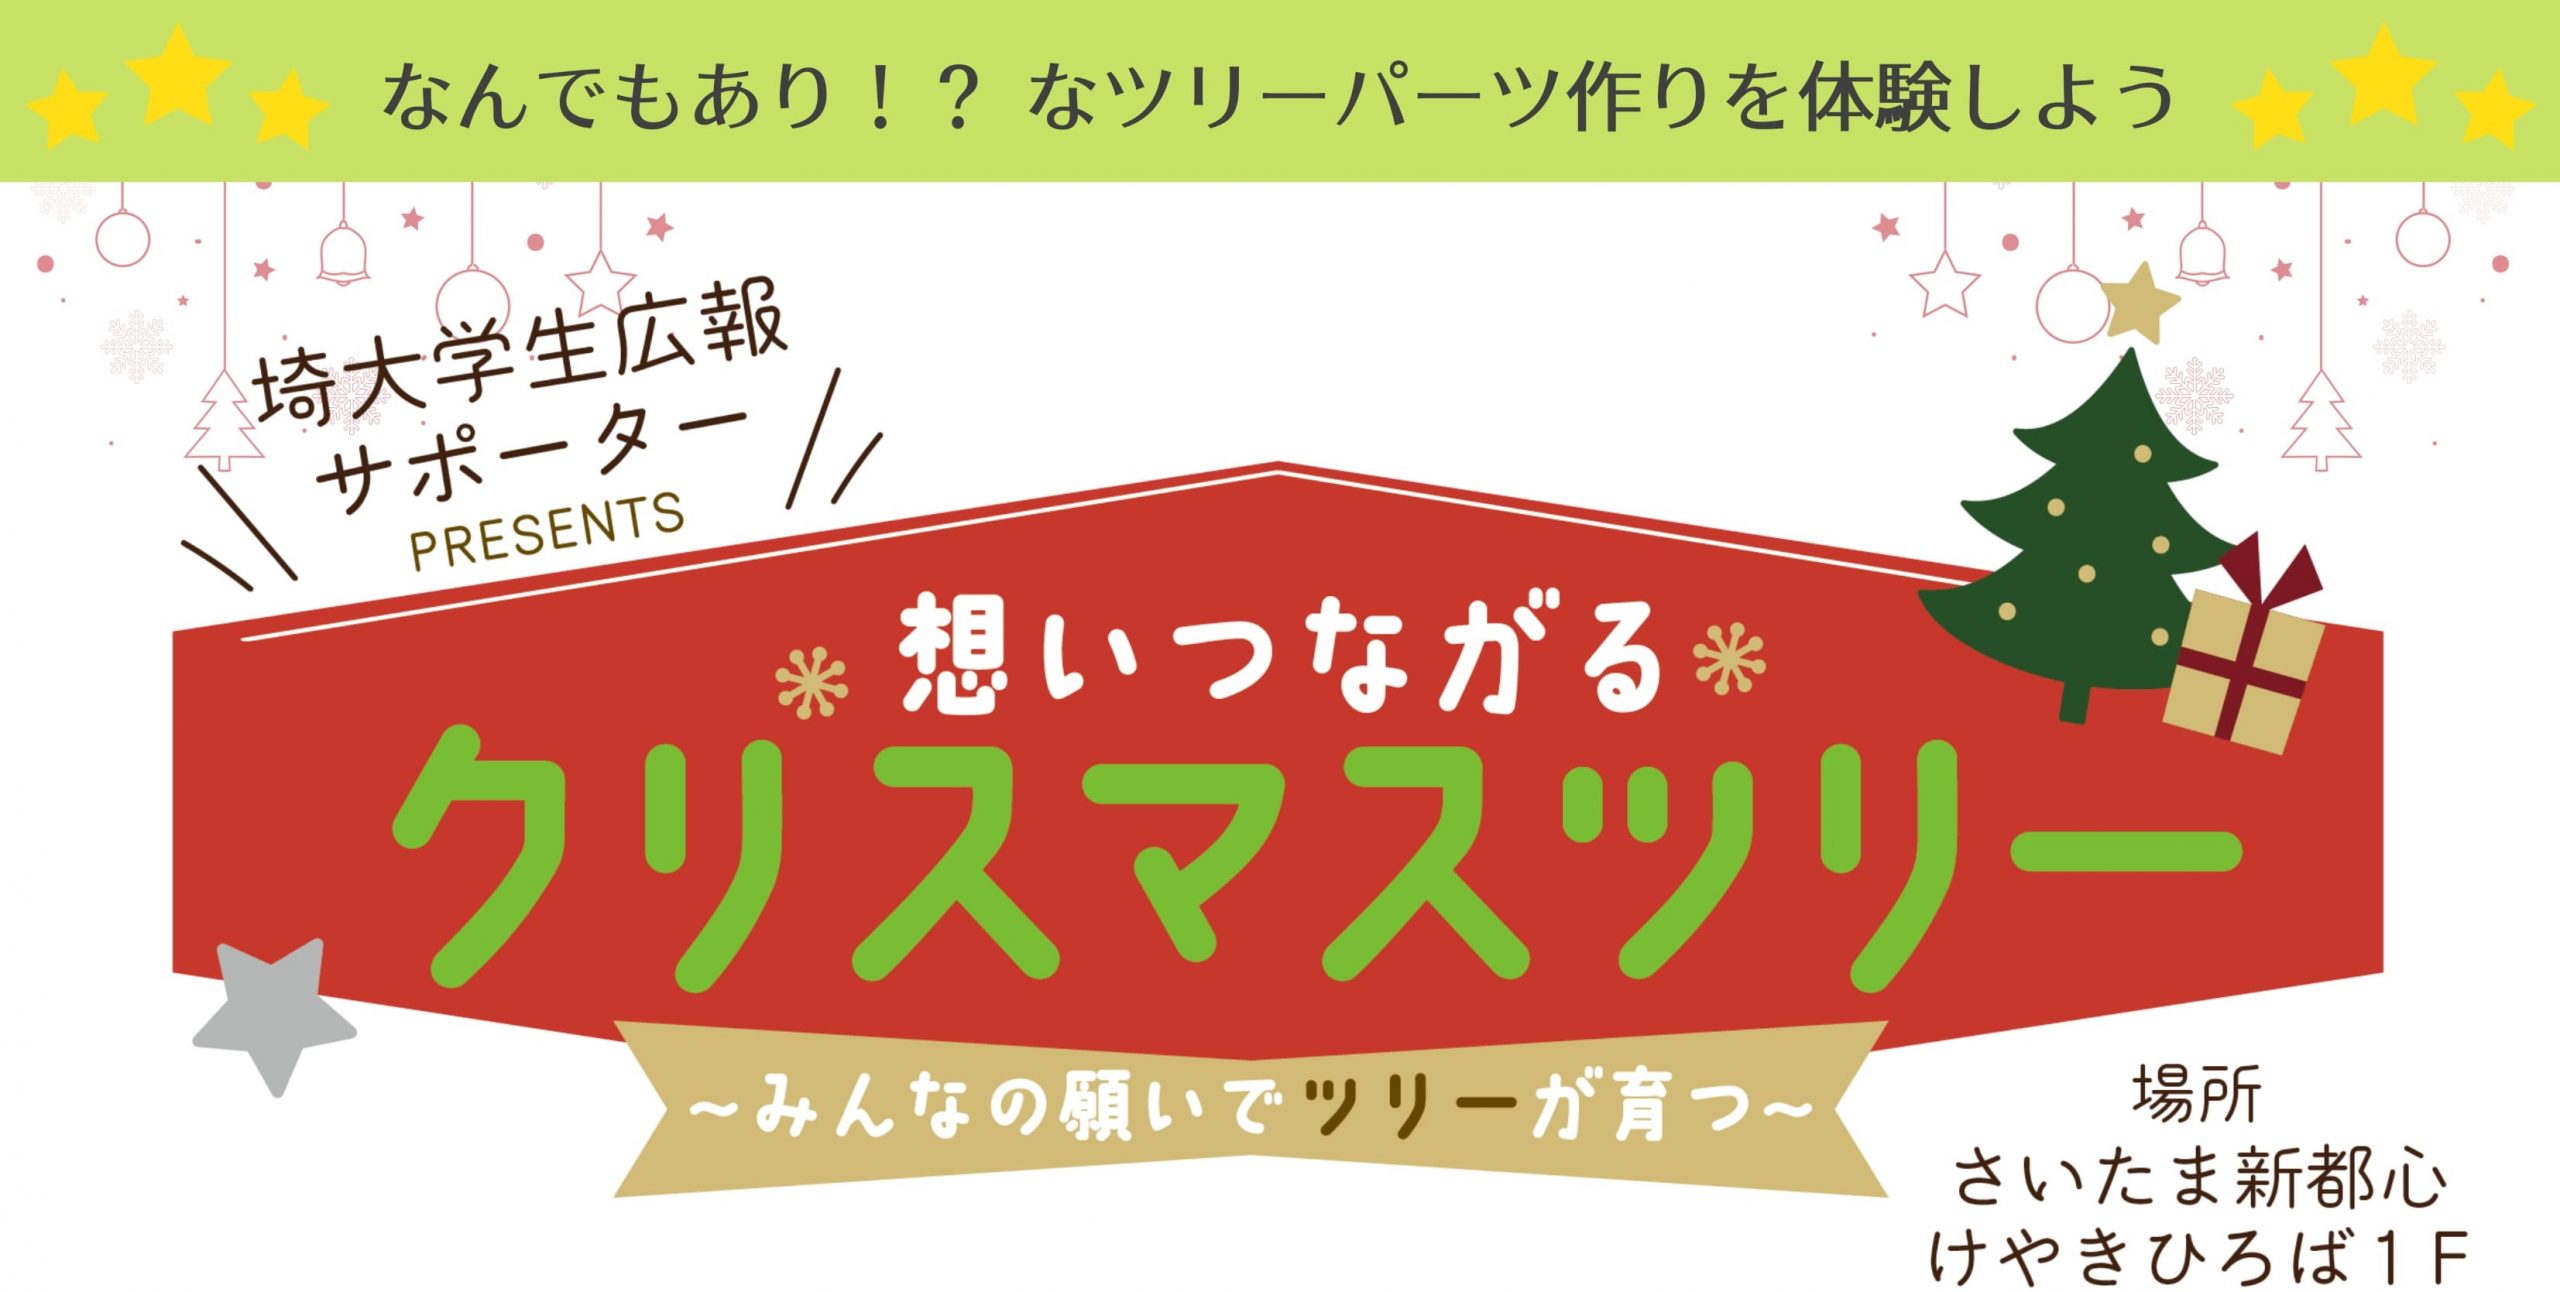 埼大学生広報サポーター「想いつながるクリスマスツリー」